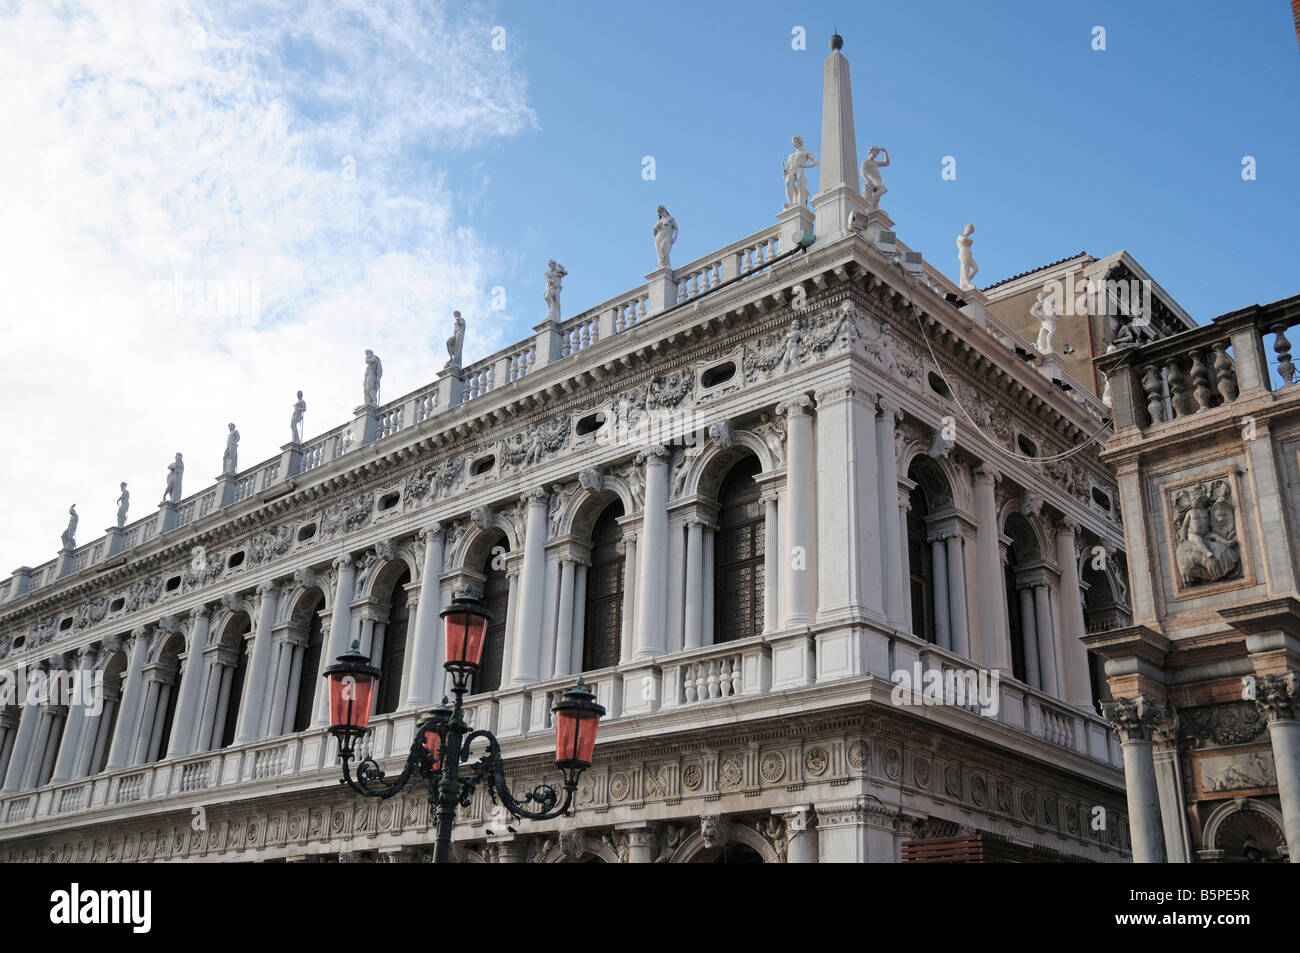 Biblioteca Sansoviniana (Biblioteca Nazionale Marciana), St Mark's, Venice, Italy. Architect Jacopo Sansovino. Stock Photo